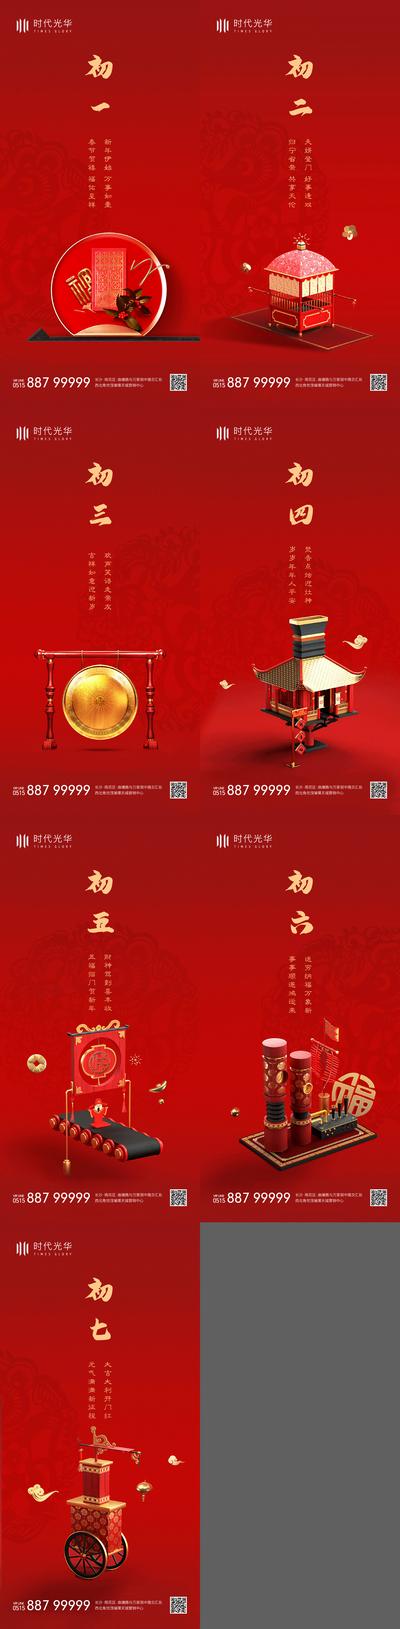 南门网 海报  中国传统节日  年俗 过年 春节 除夕  初一  初二